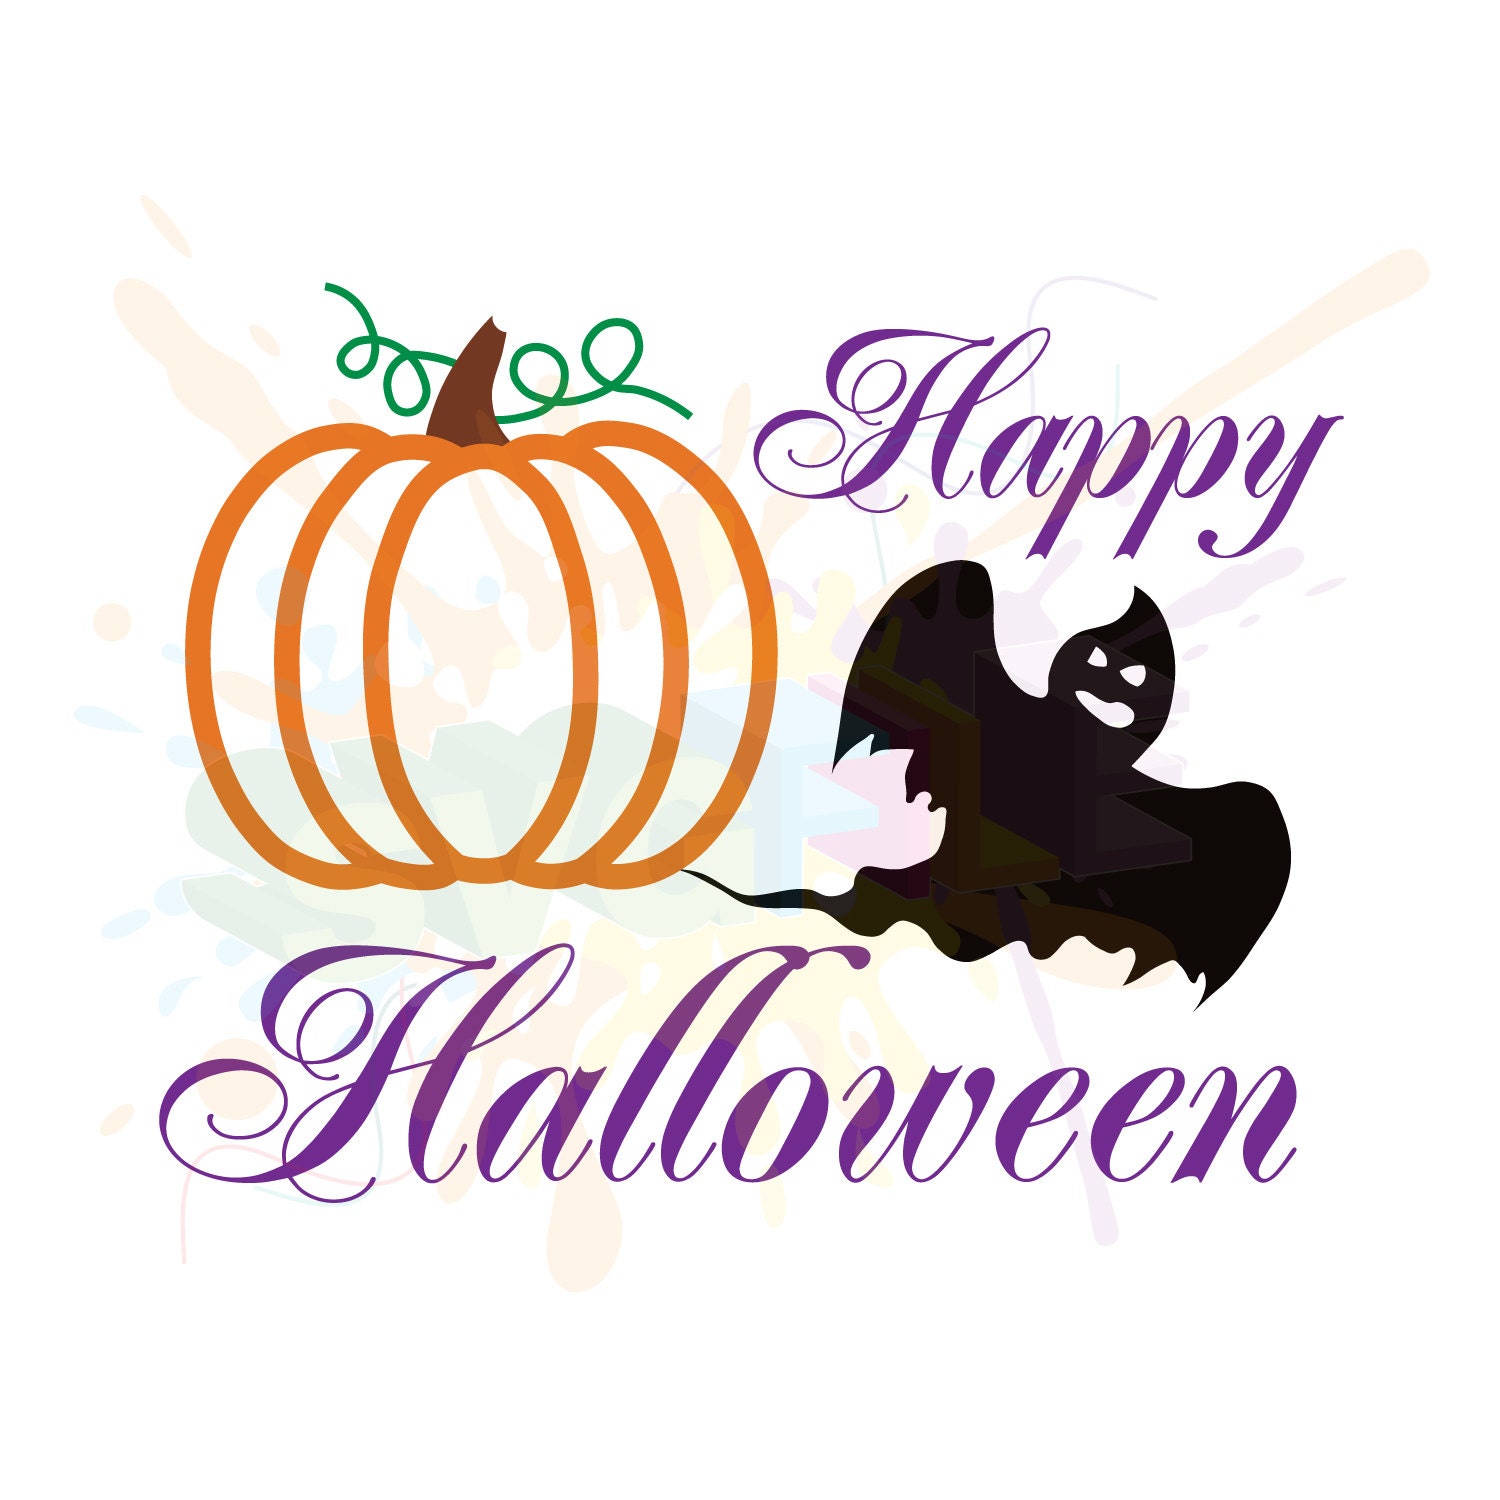 Download Halloween SVG Files for Cutting Pumpkin Cricut Fall Designs